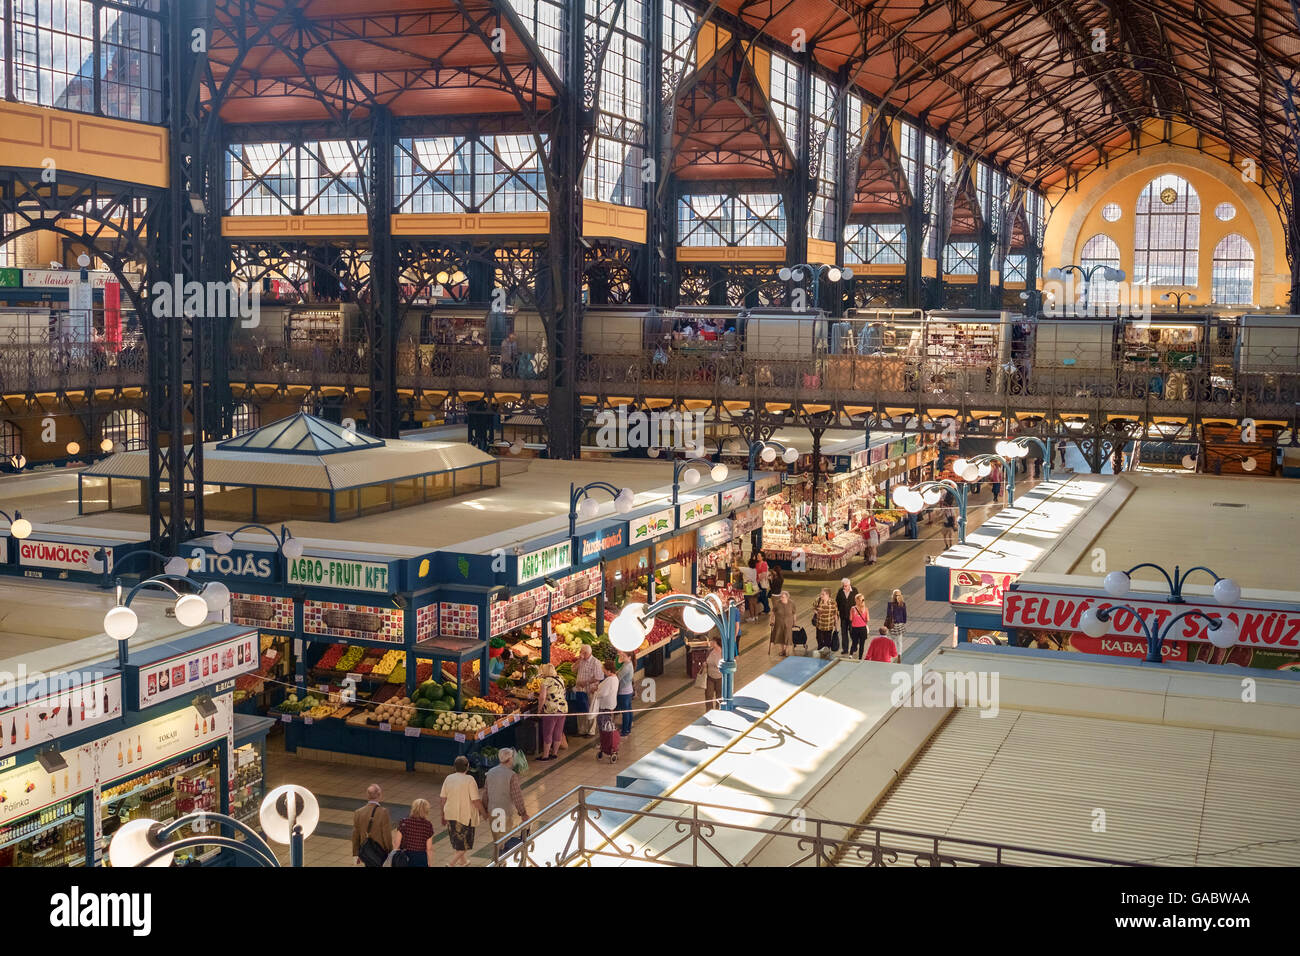 Innere der zentralen Markthalle, Budapest, Ungarn, eine restaurierte neugotische Halle mit Lebensmittelgeschäft Produkte und Souvenirs. Stockfoto